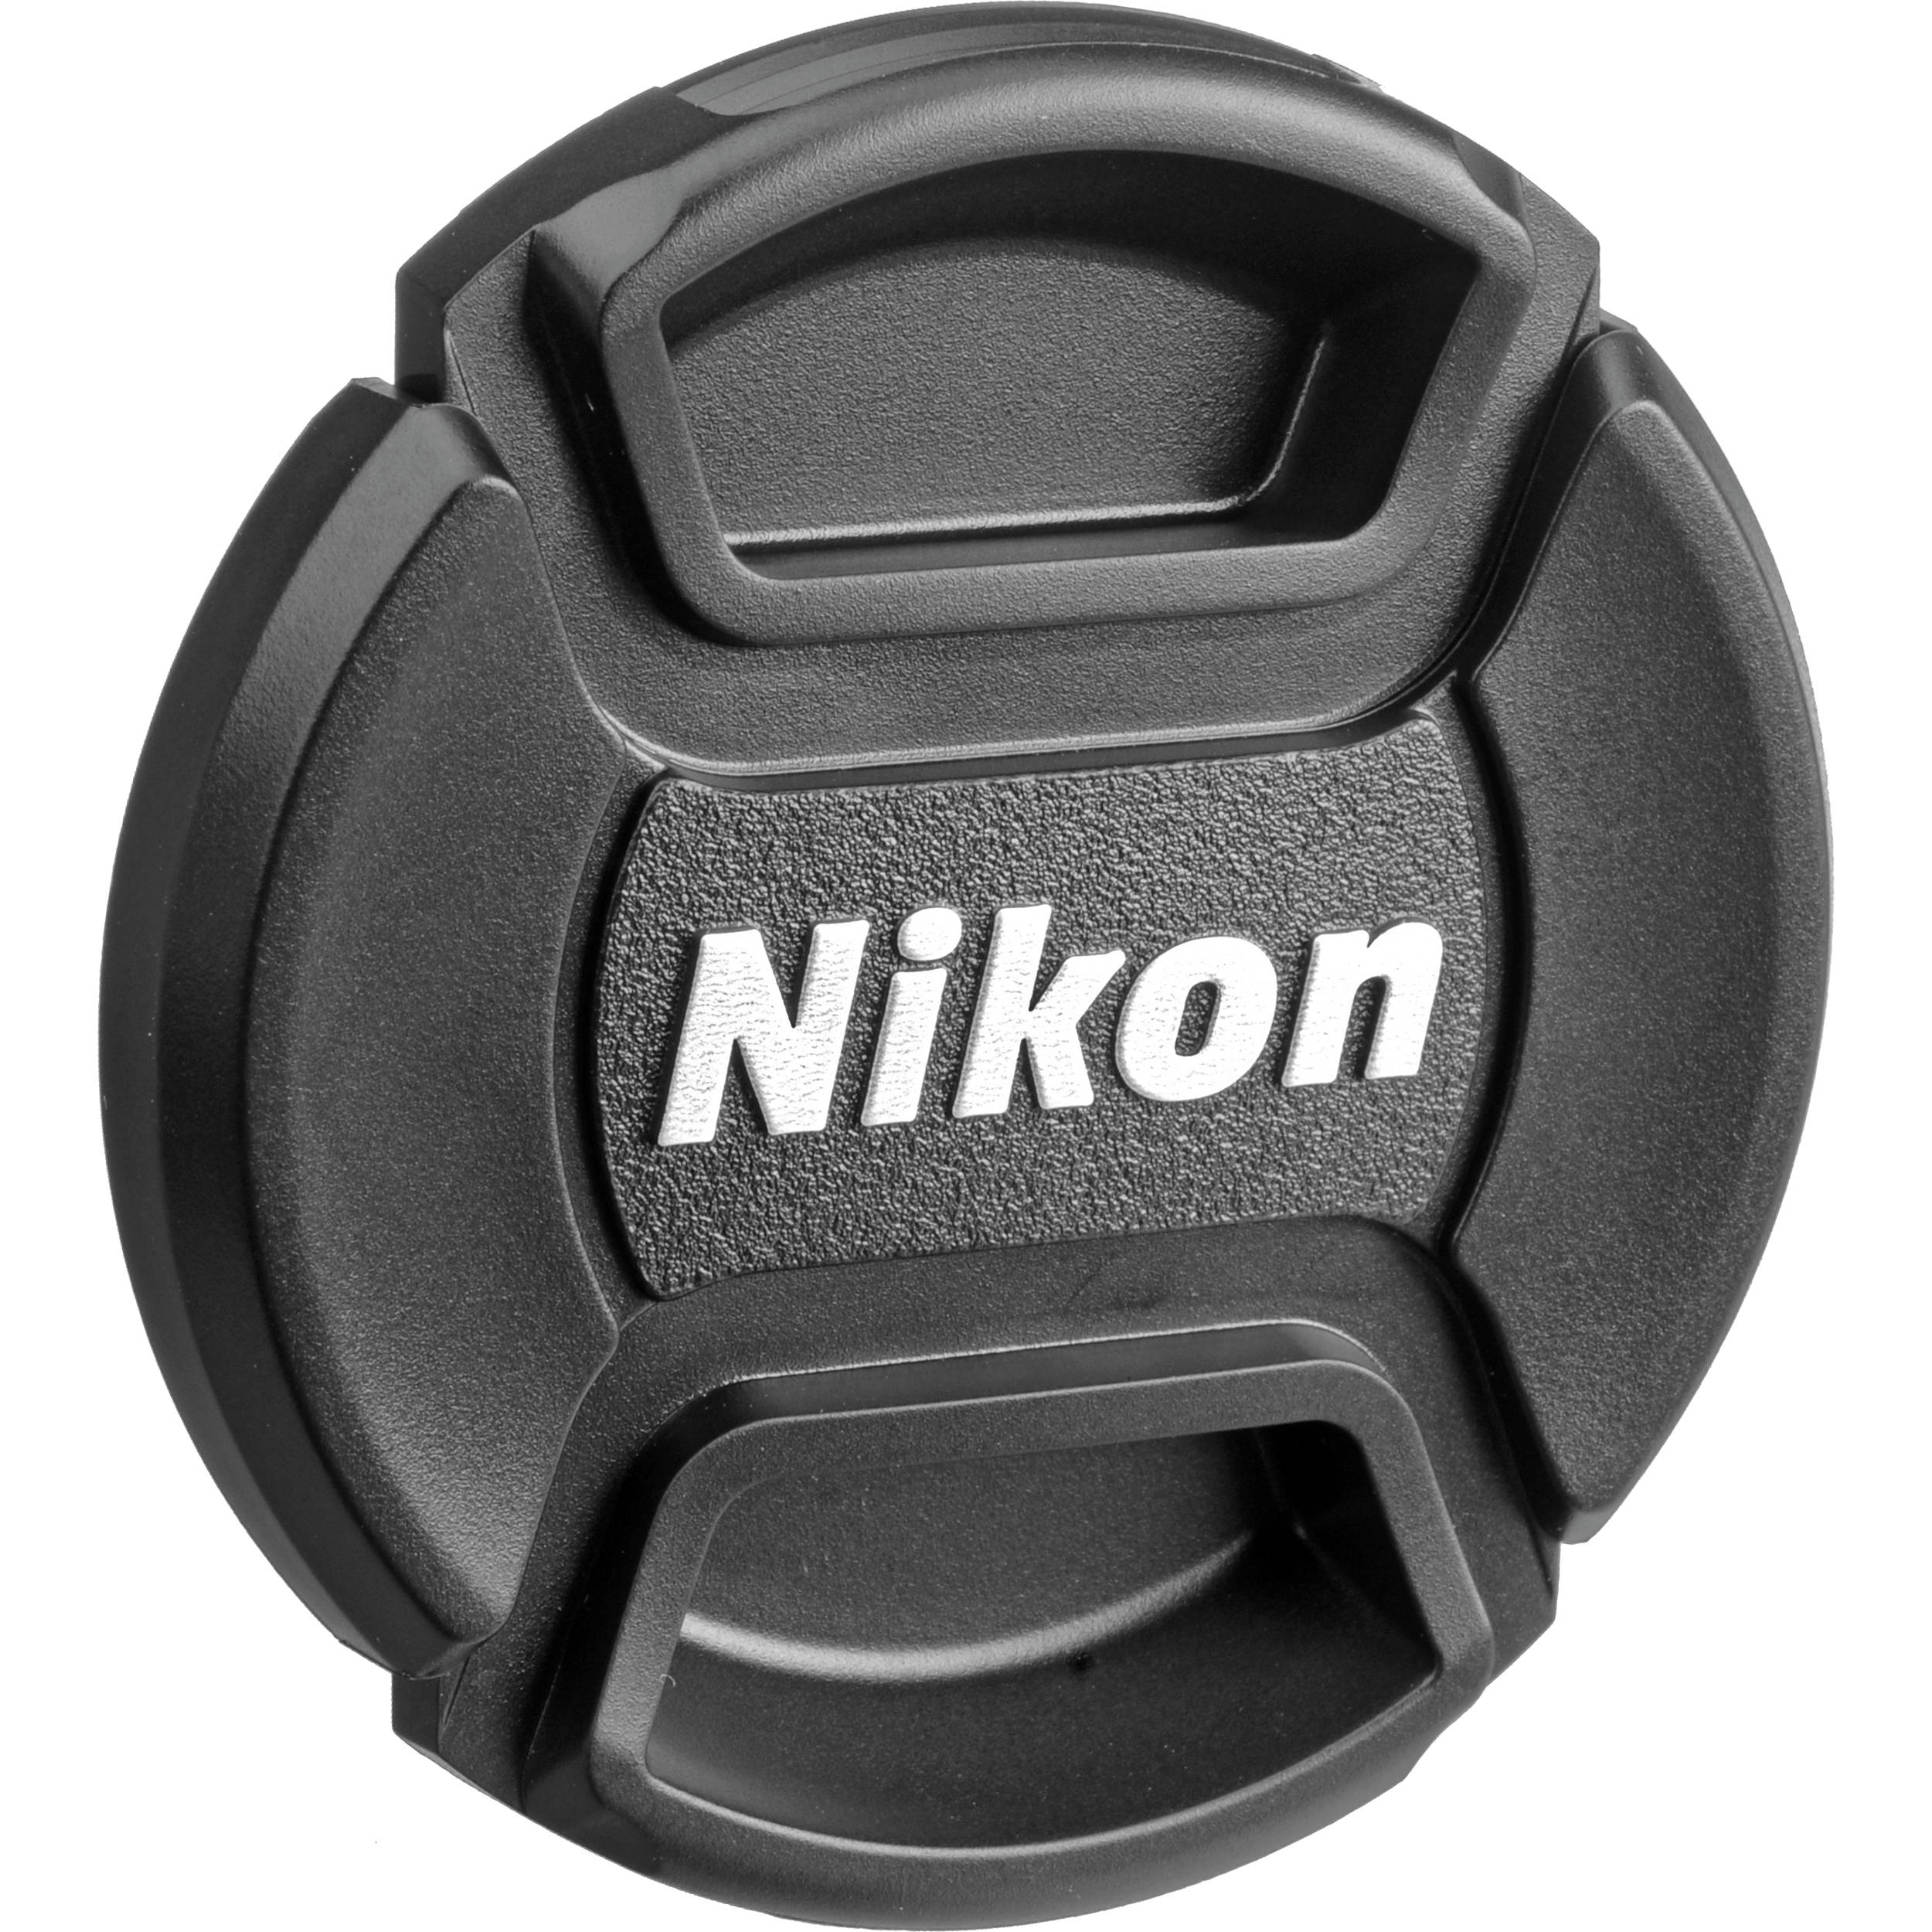 Nikon AF-S Nikkor 24-70 mm f / 2,8g ED Lens